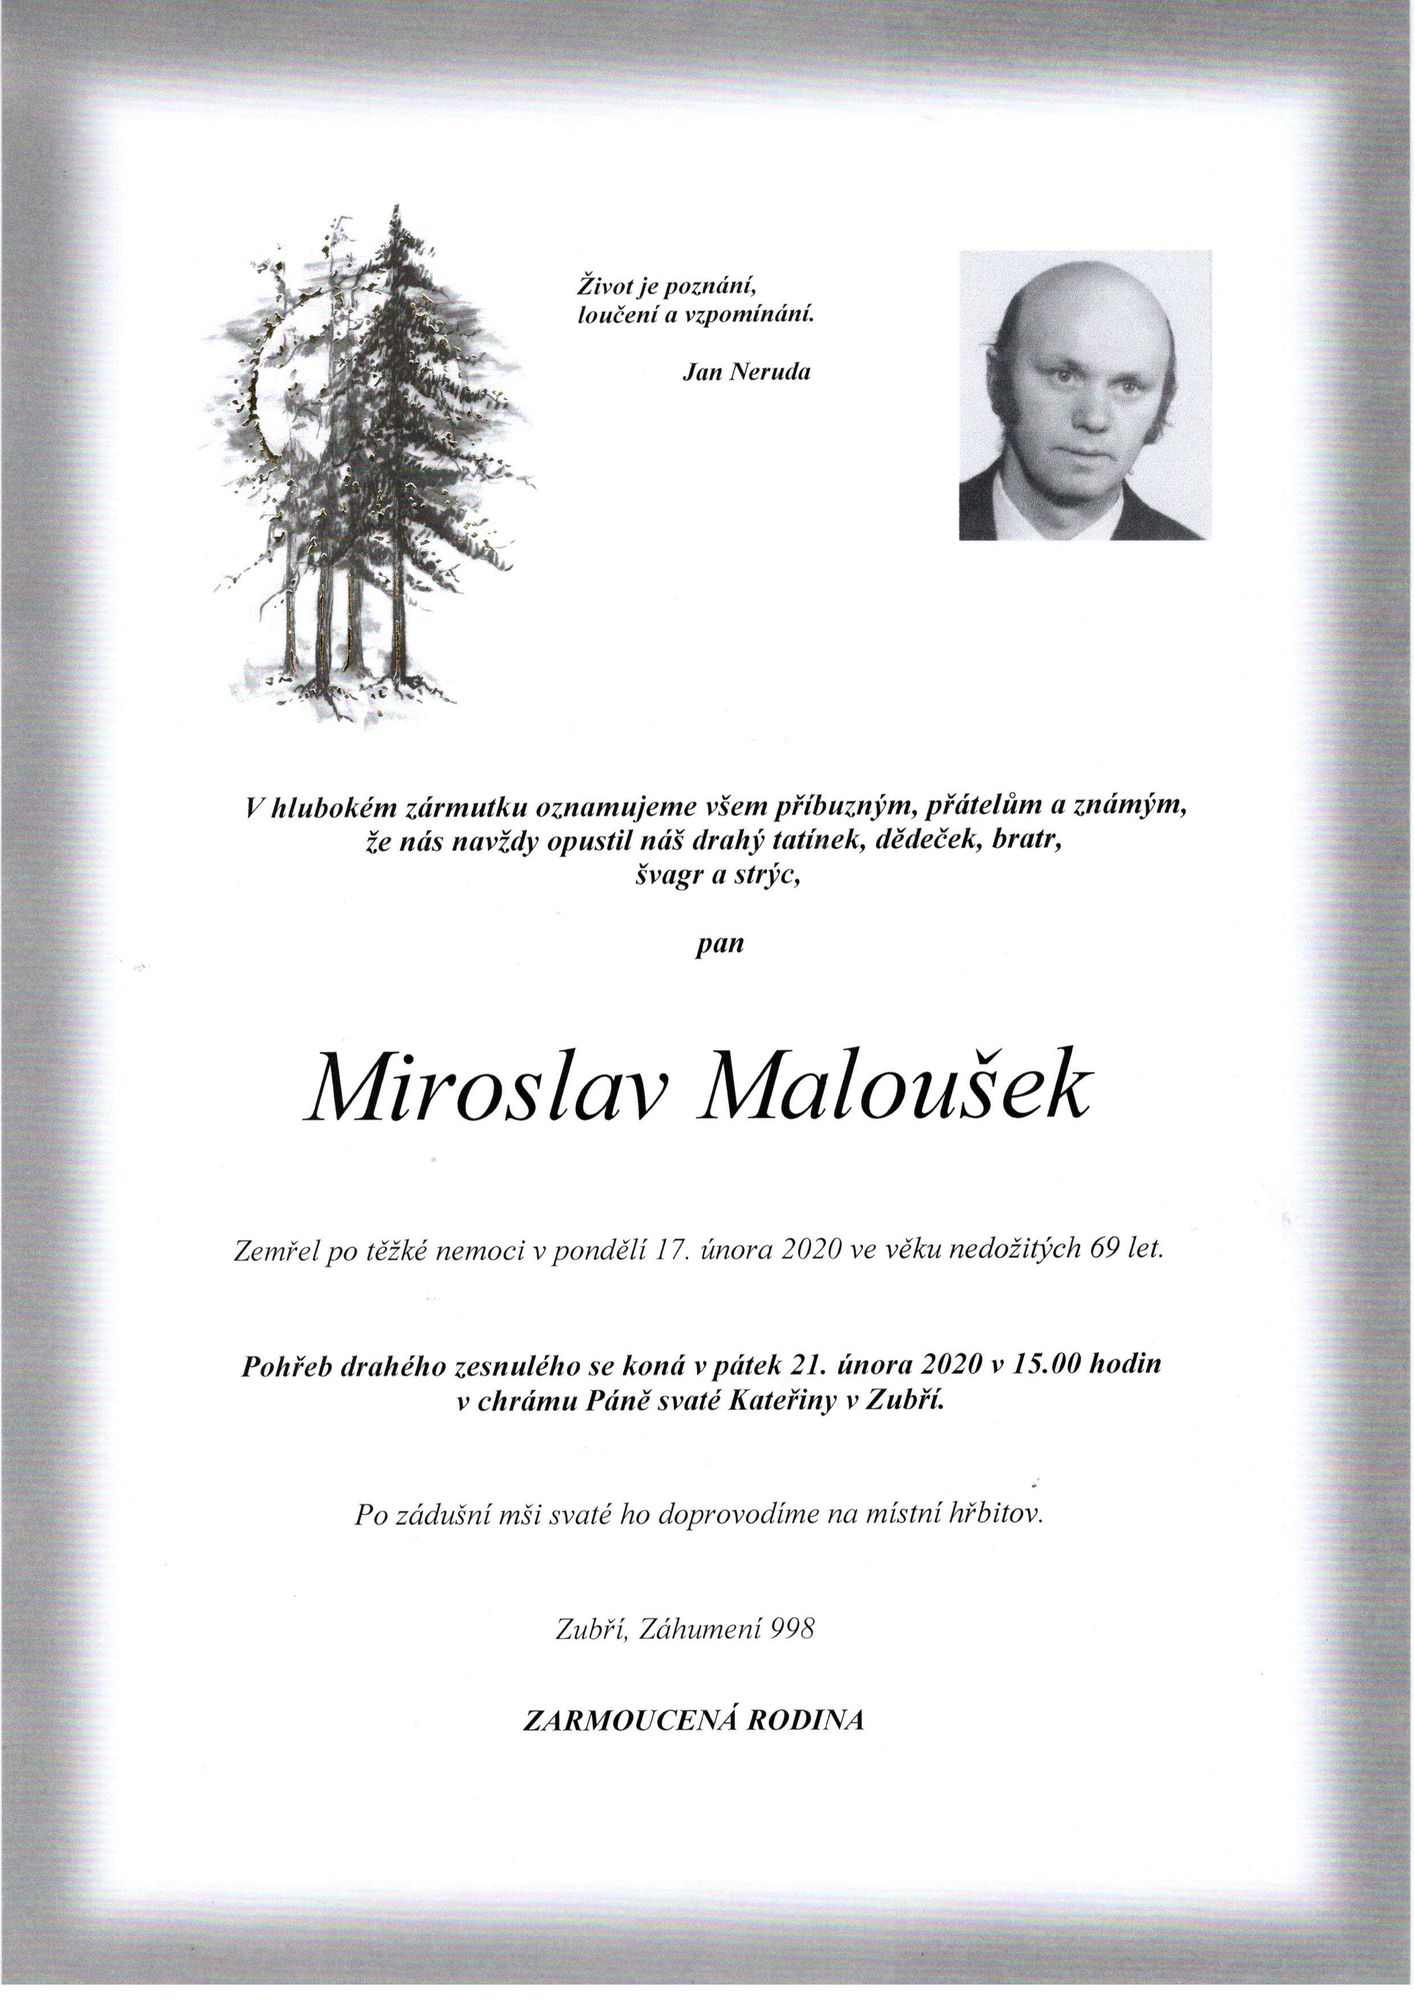 Miroslav Maloušek